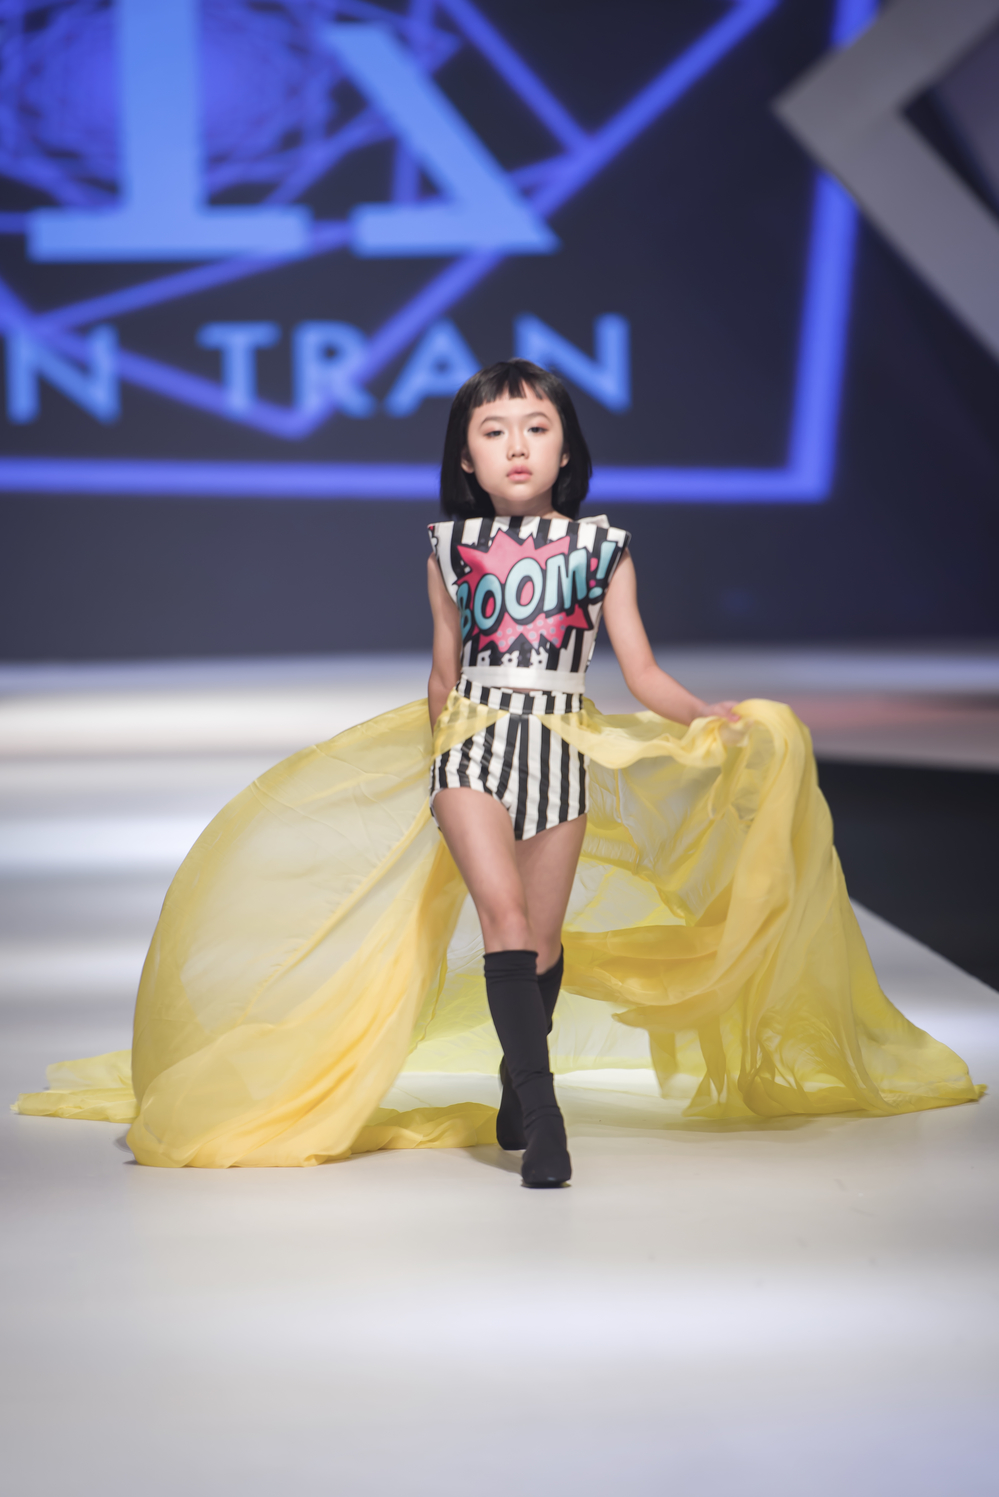 
Đến với AKFW 2018, NTK trẻ Ivan Trần đã cho thấy được “sức công phá” của anh trên mọi thiết kế thời trang từ trẻ em cho đến người lớn.